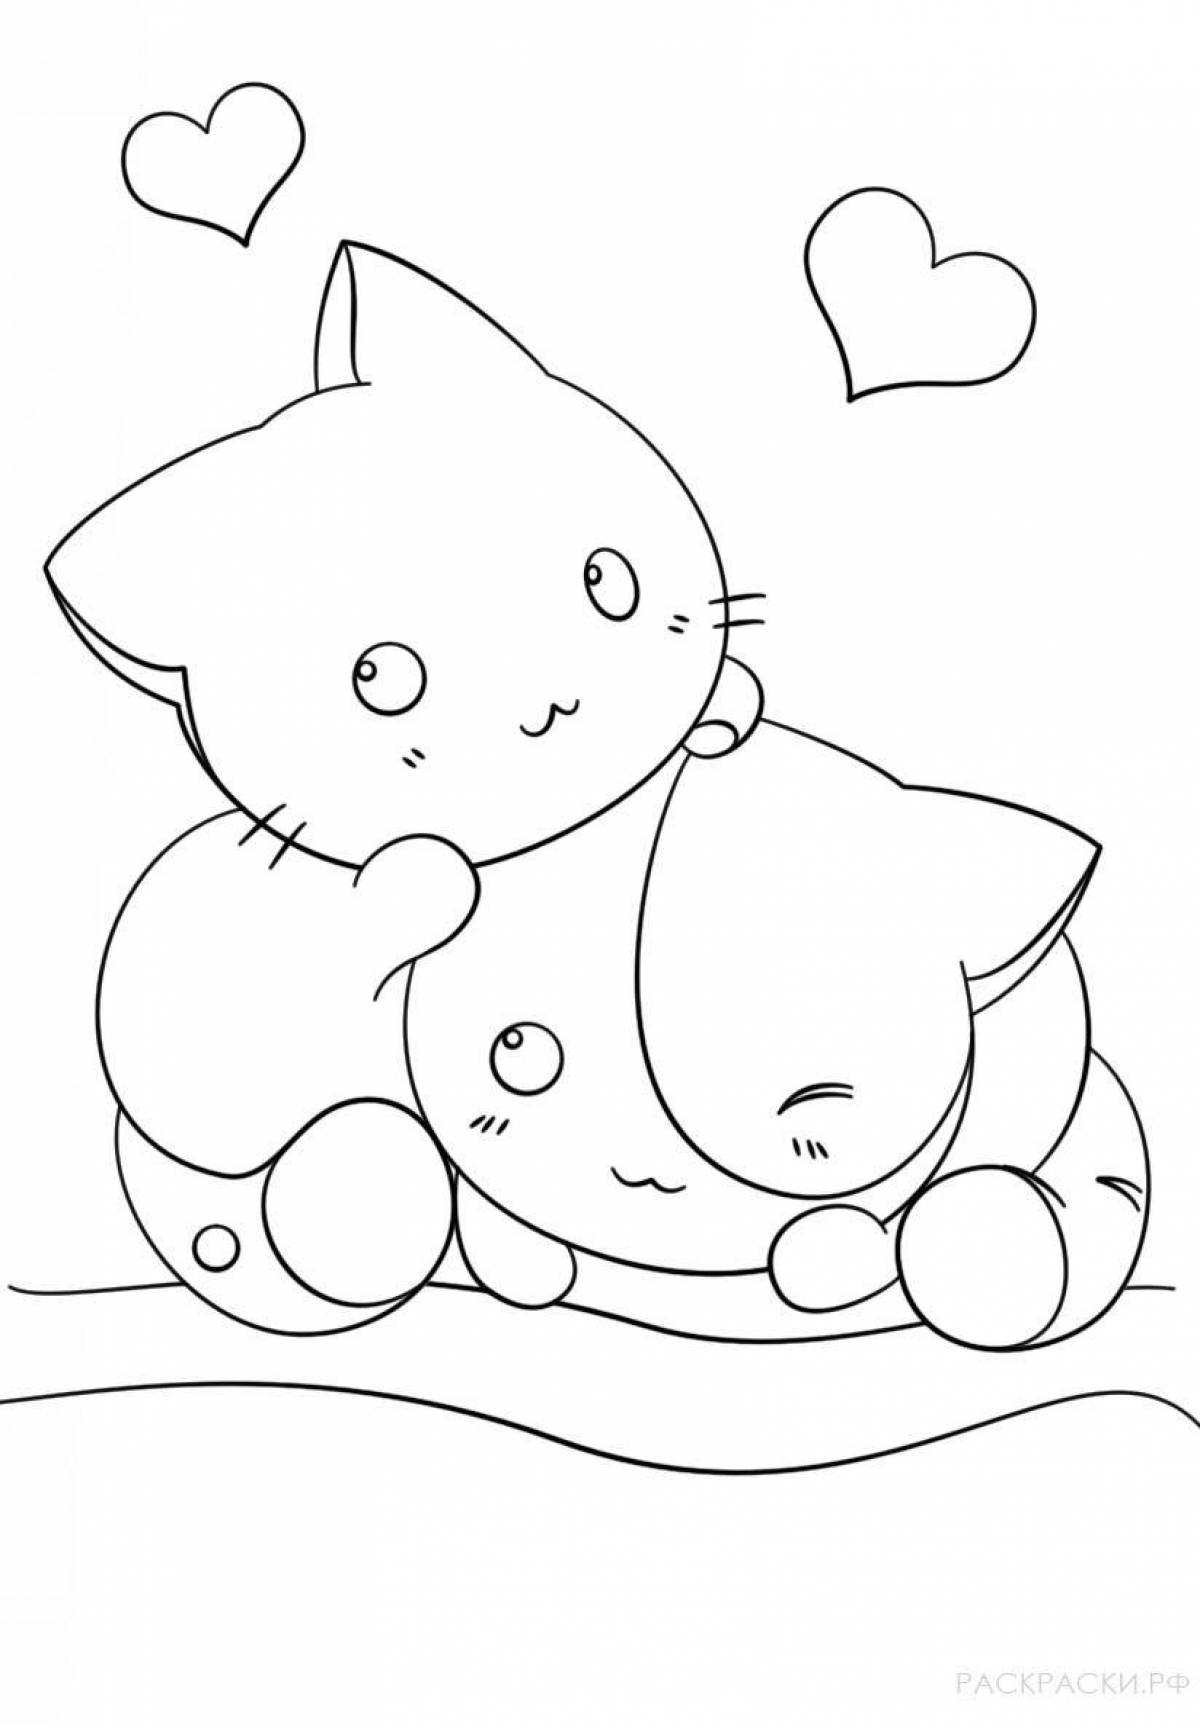 Милая и очаровательная страница раскраски кошек